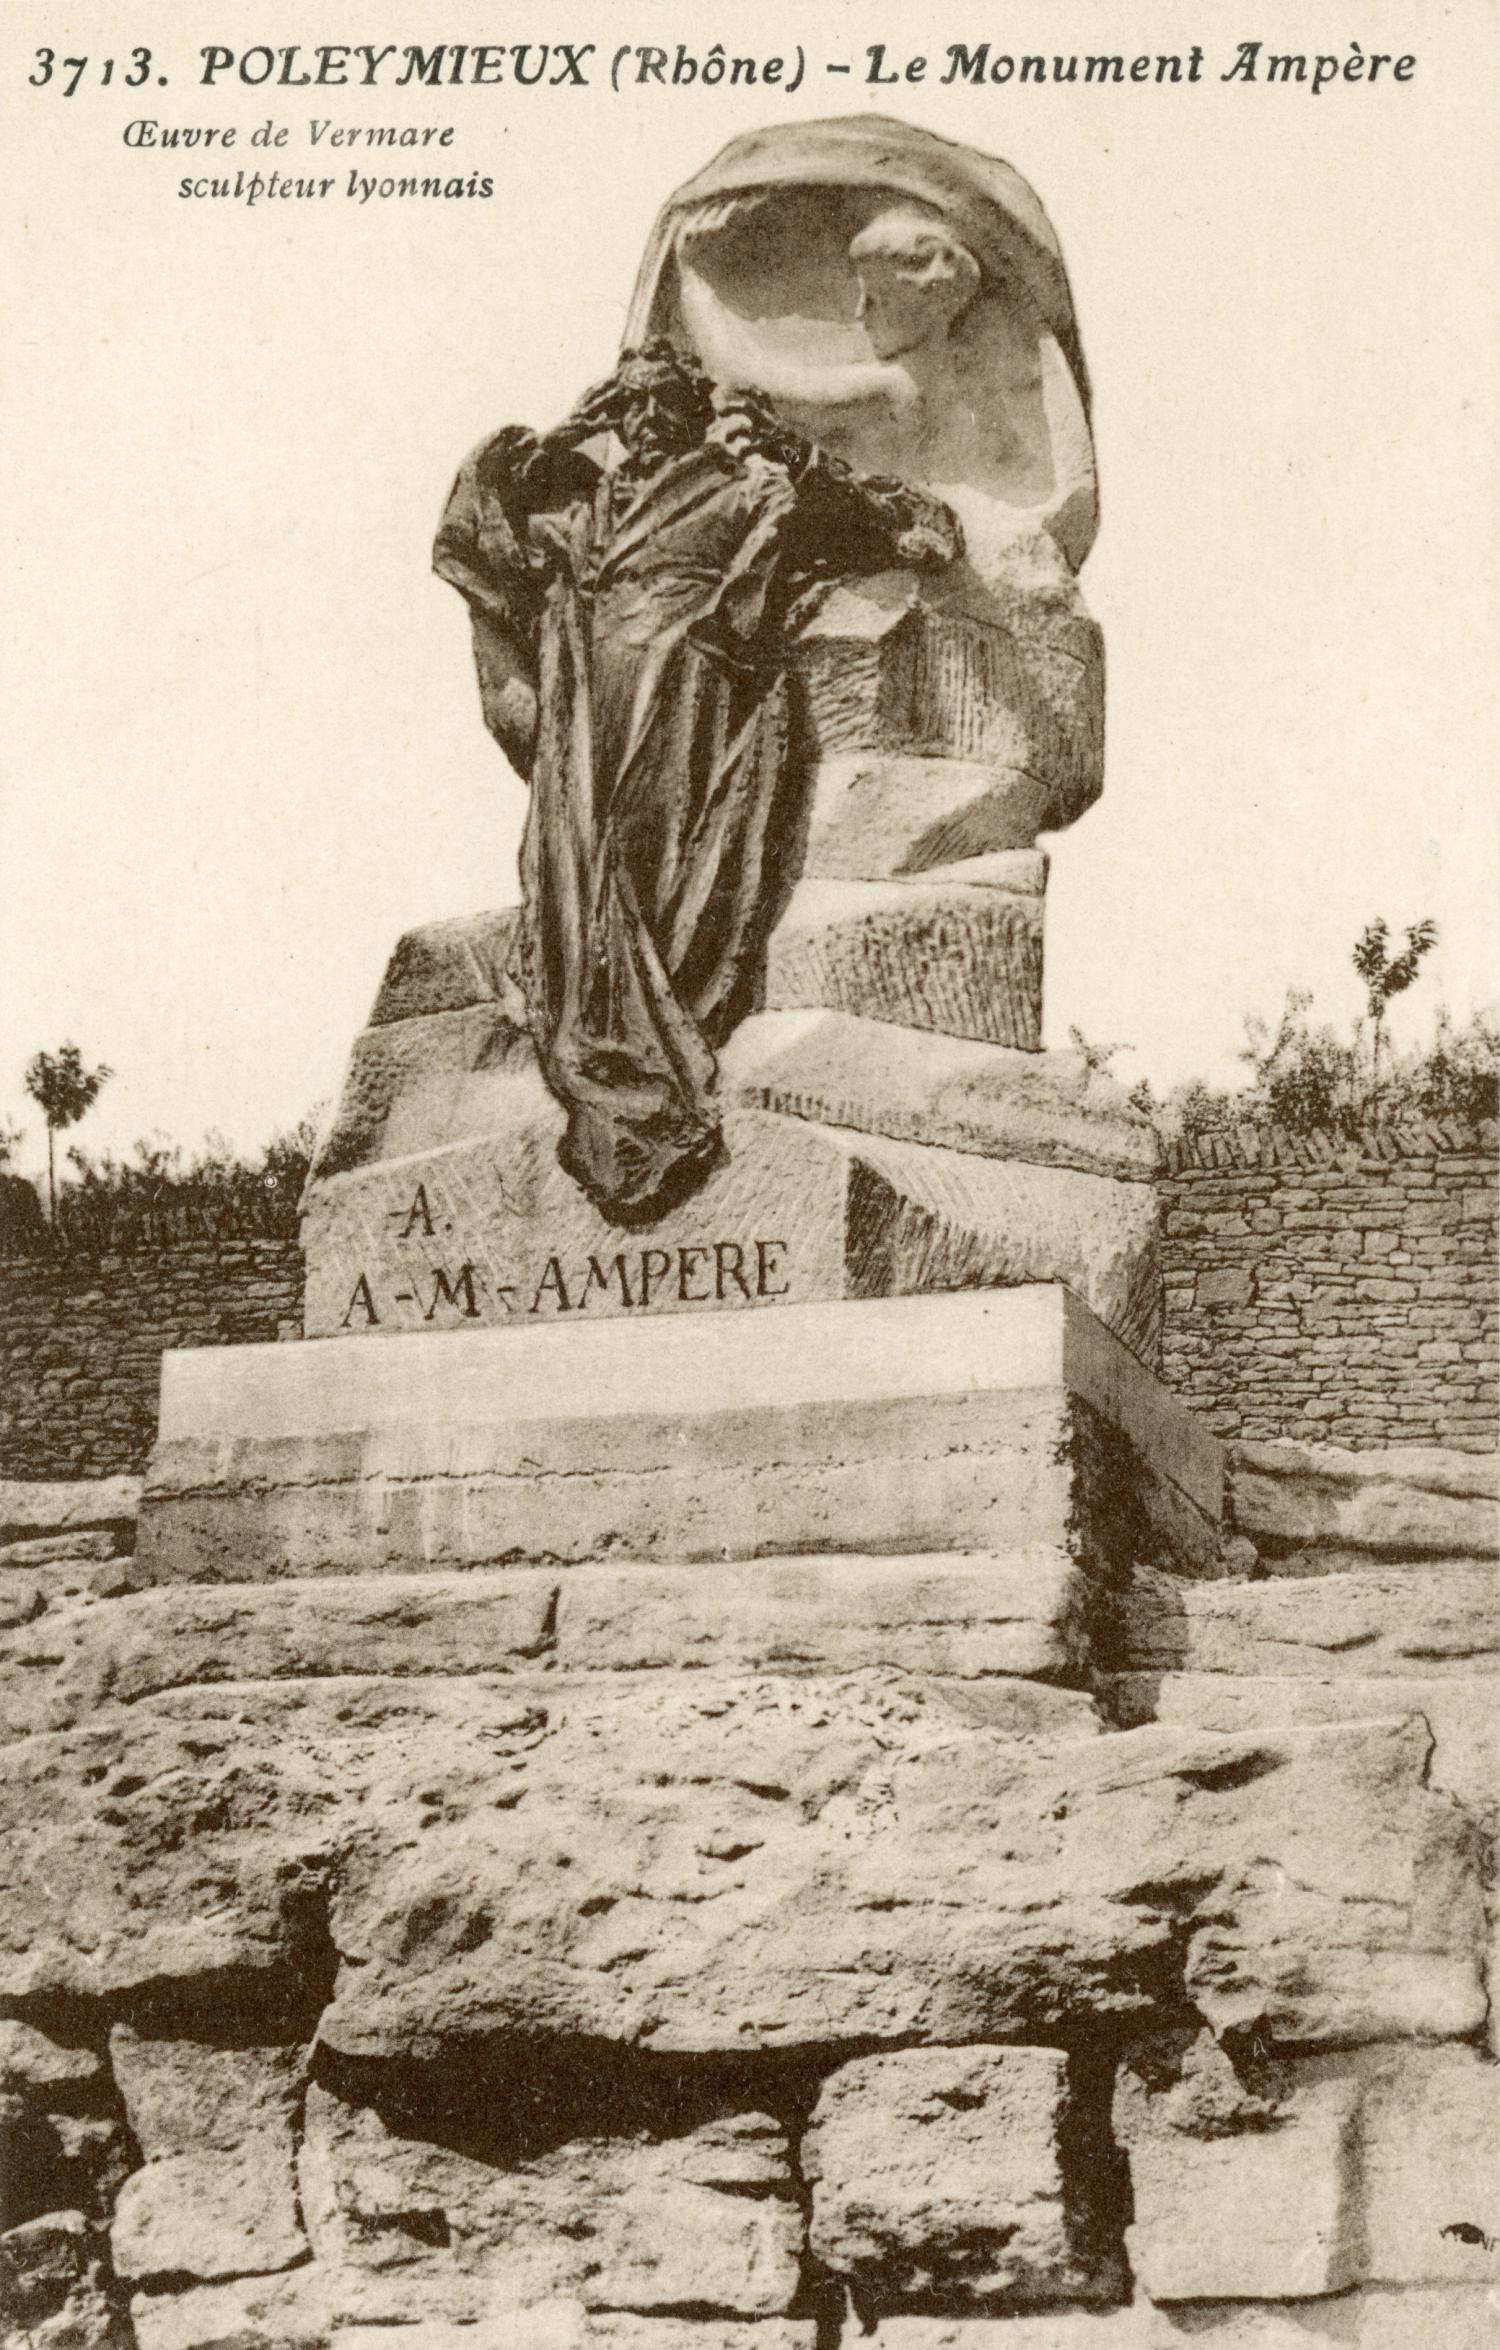 Poleymieux (Rhône). - Le Monument Ampère